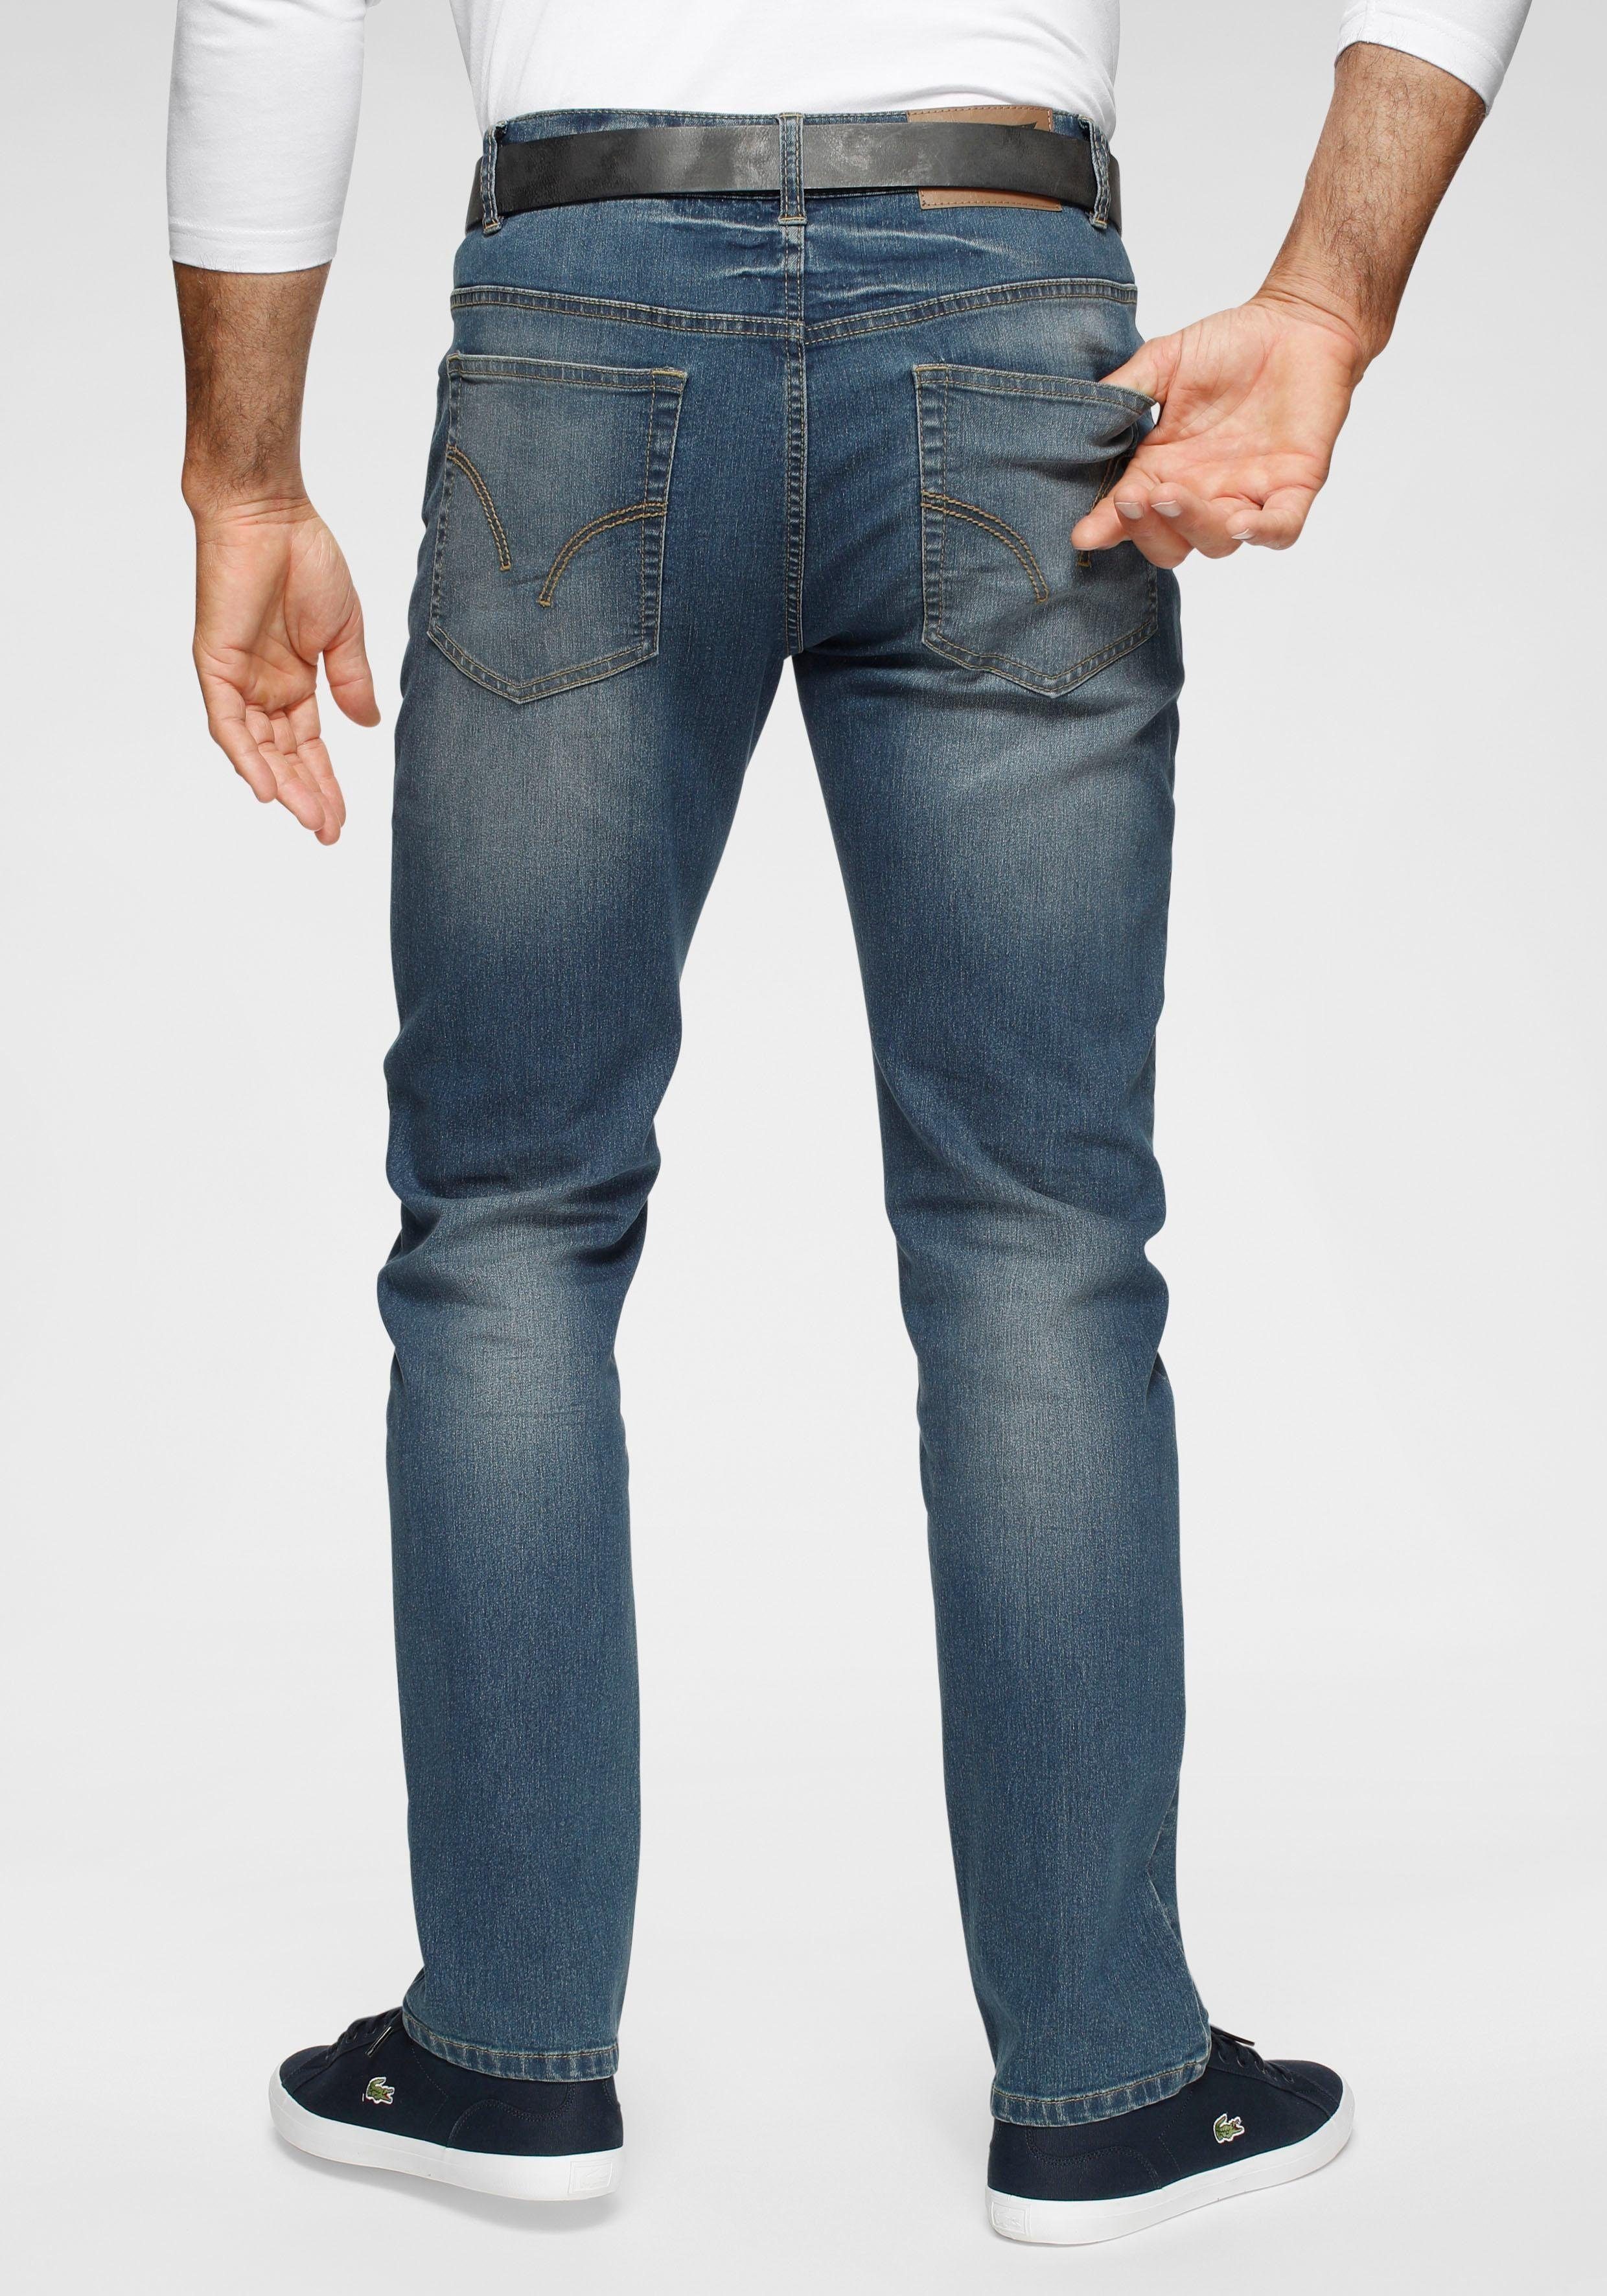 Arizona Dehnbund-Jeans Paul online kaufen | OTTO